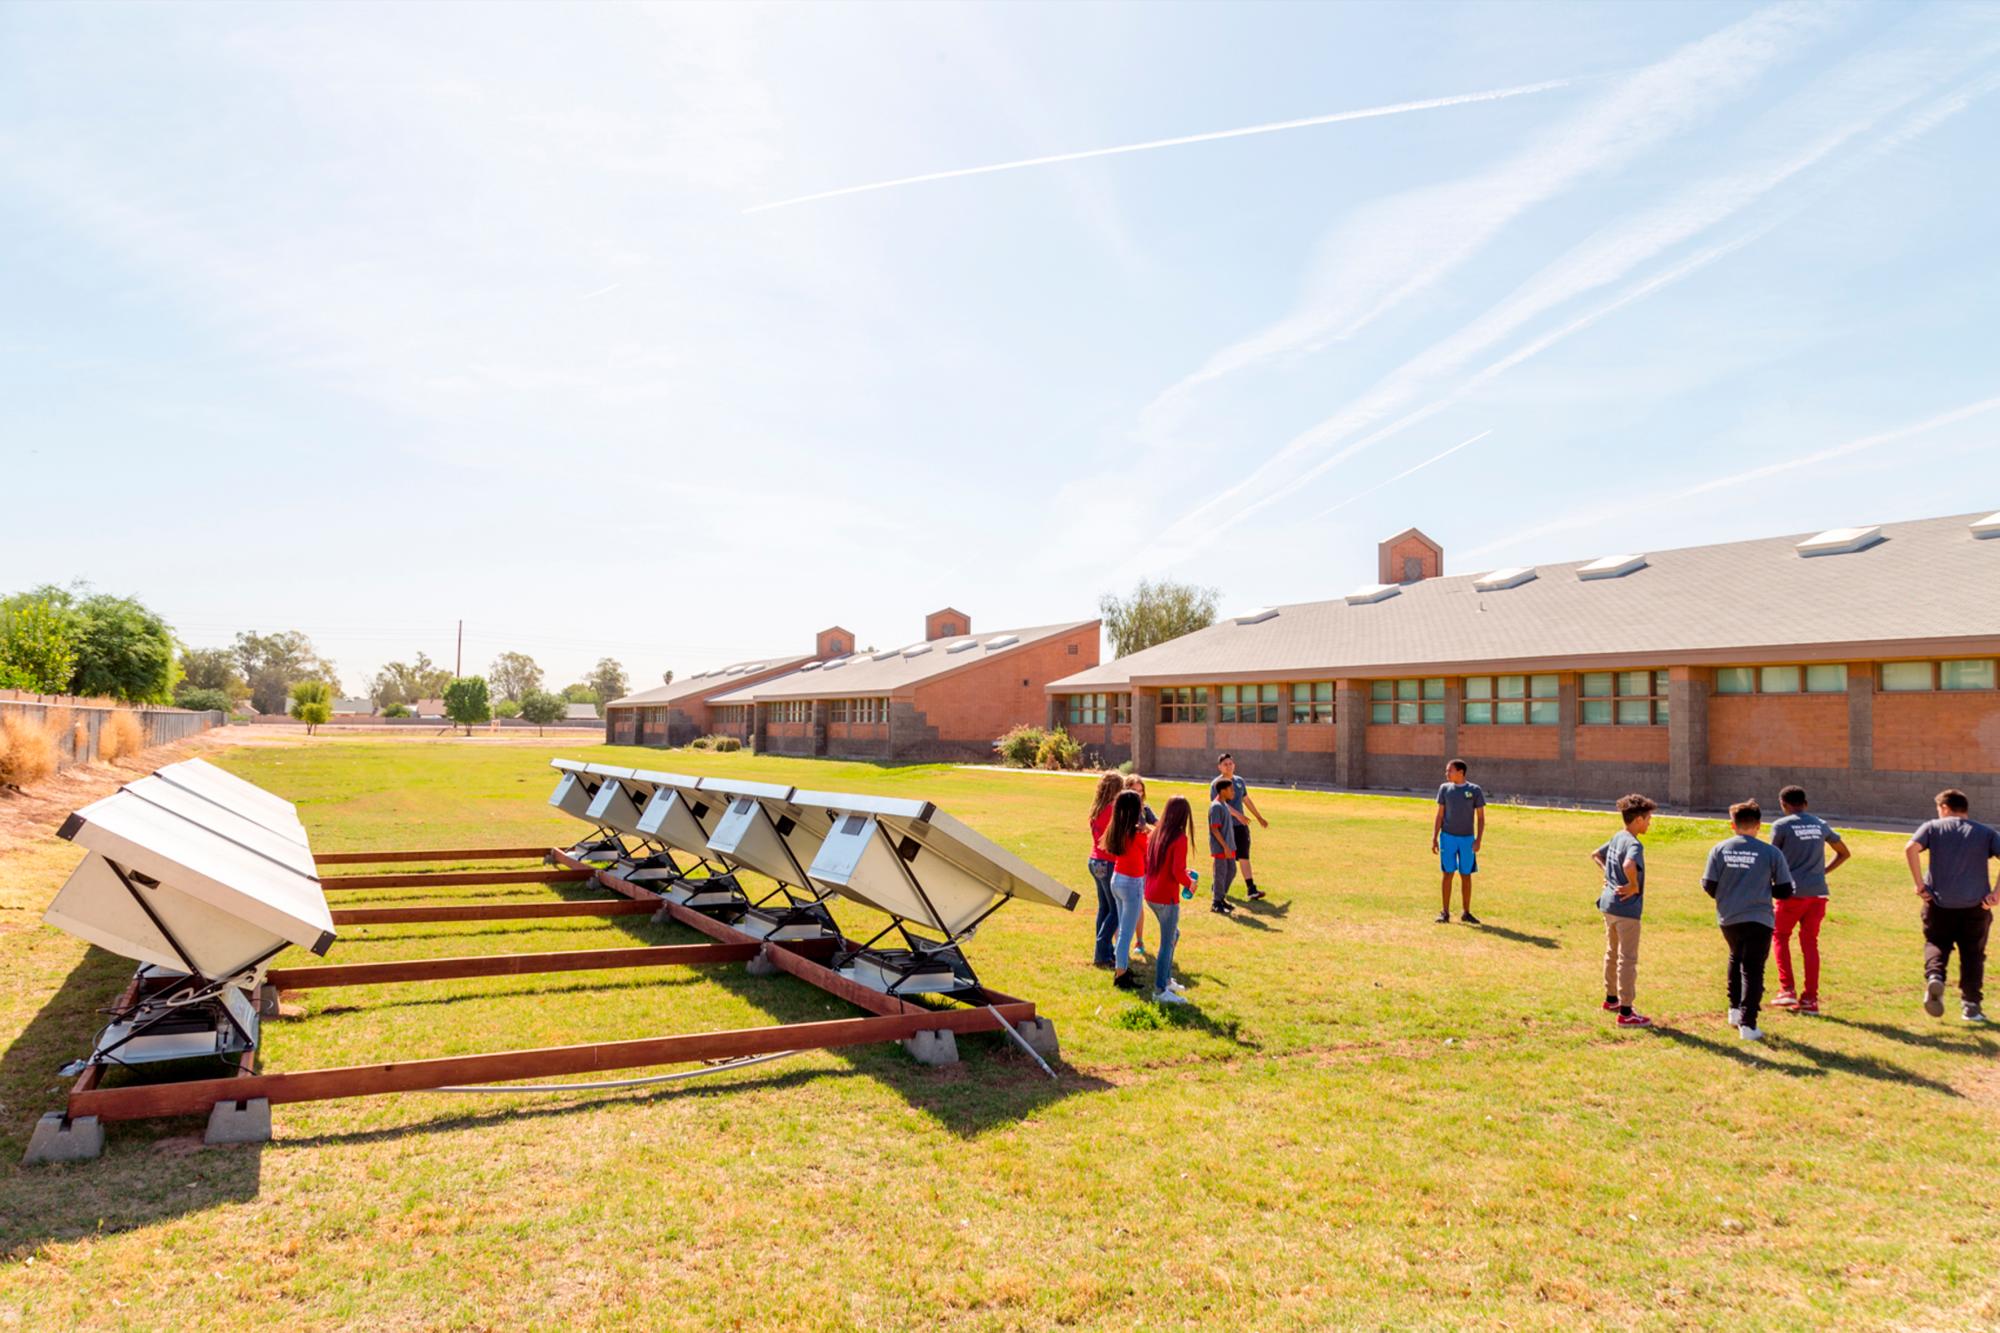 Imagen de unos hidropaneles situados en la escuela Copper King Elementary ubicada en Phoenix, Arizona, EE.UU.